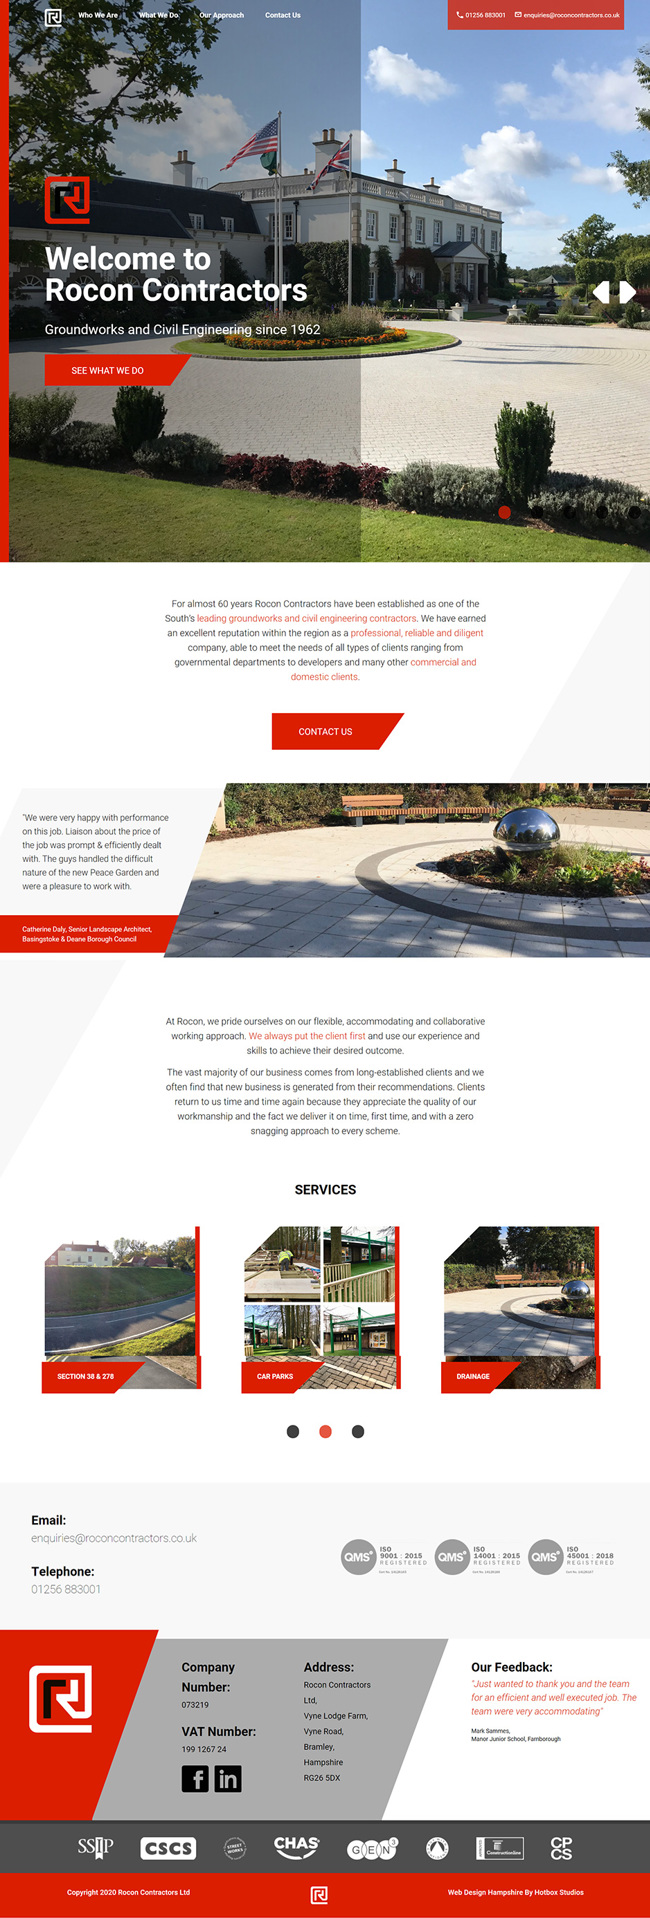 Rocon Contractors Website Design and WordPress Development SP001 Homepage